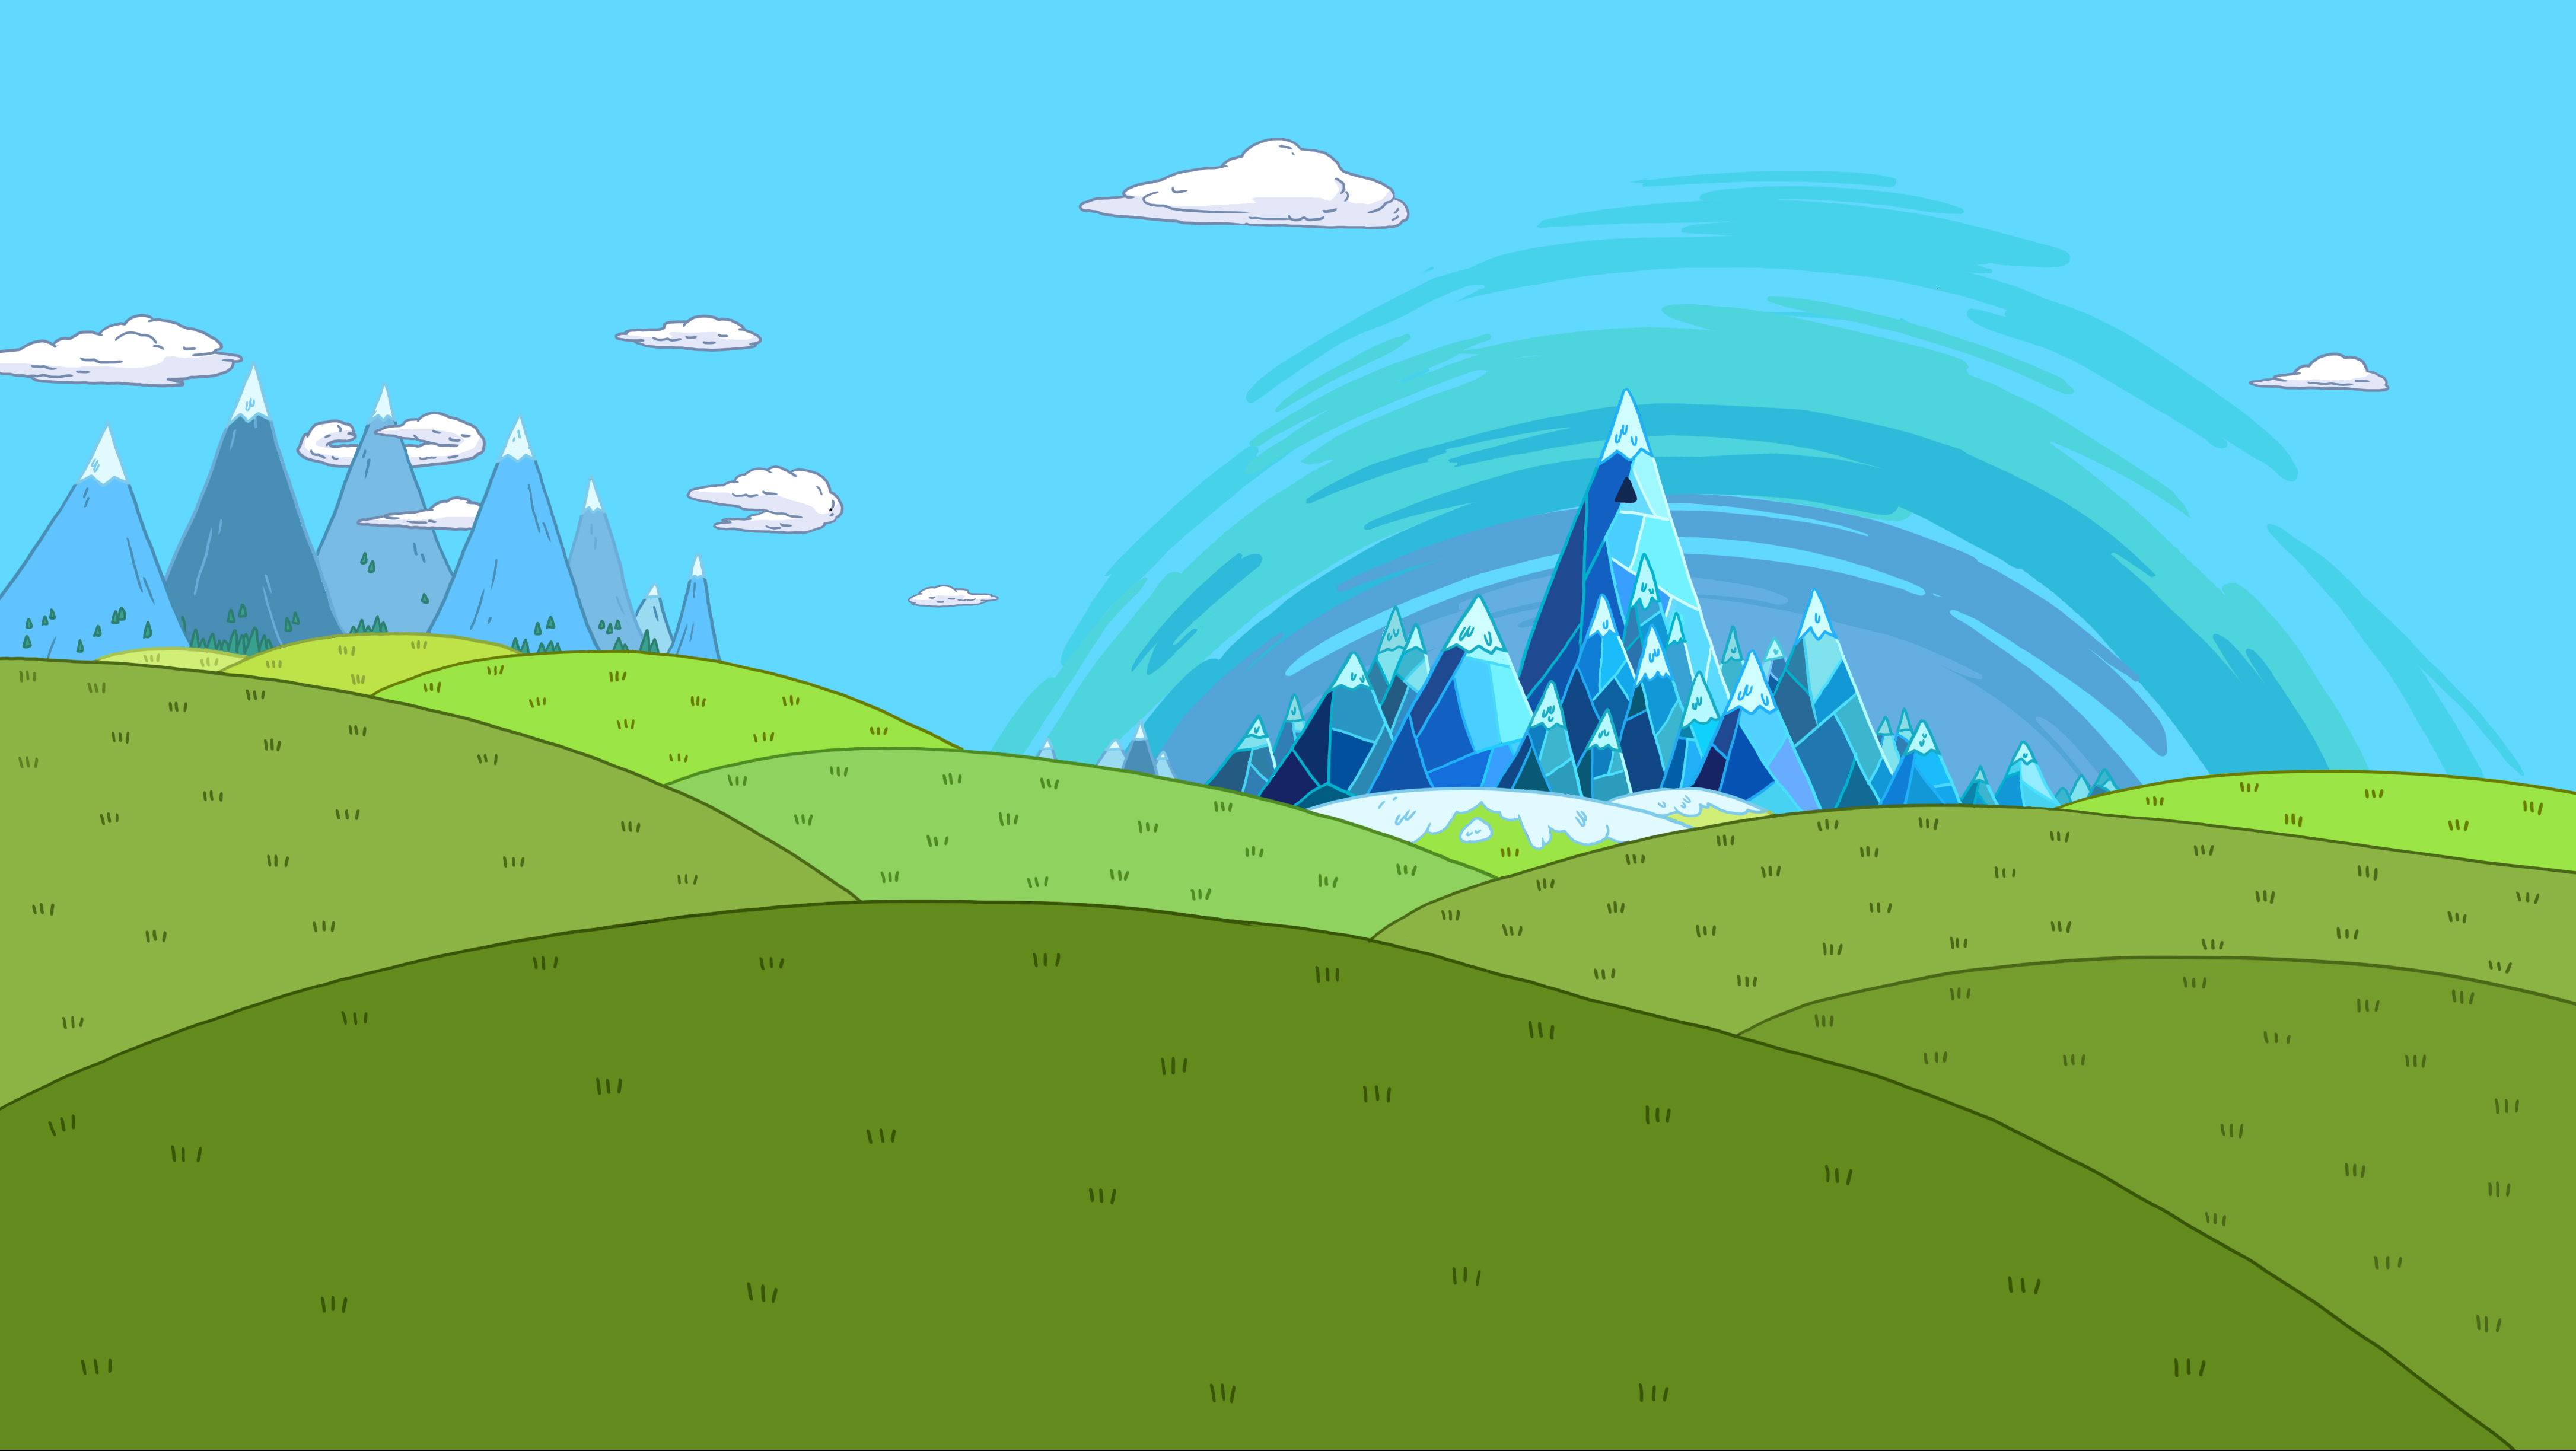 vectors, Adventure Time - desktop wallpaper